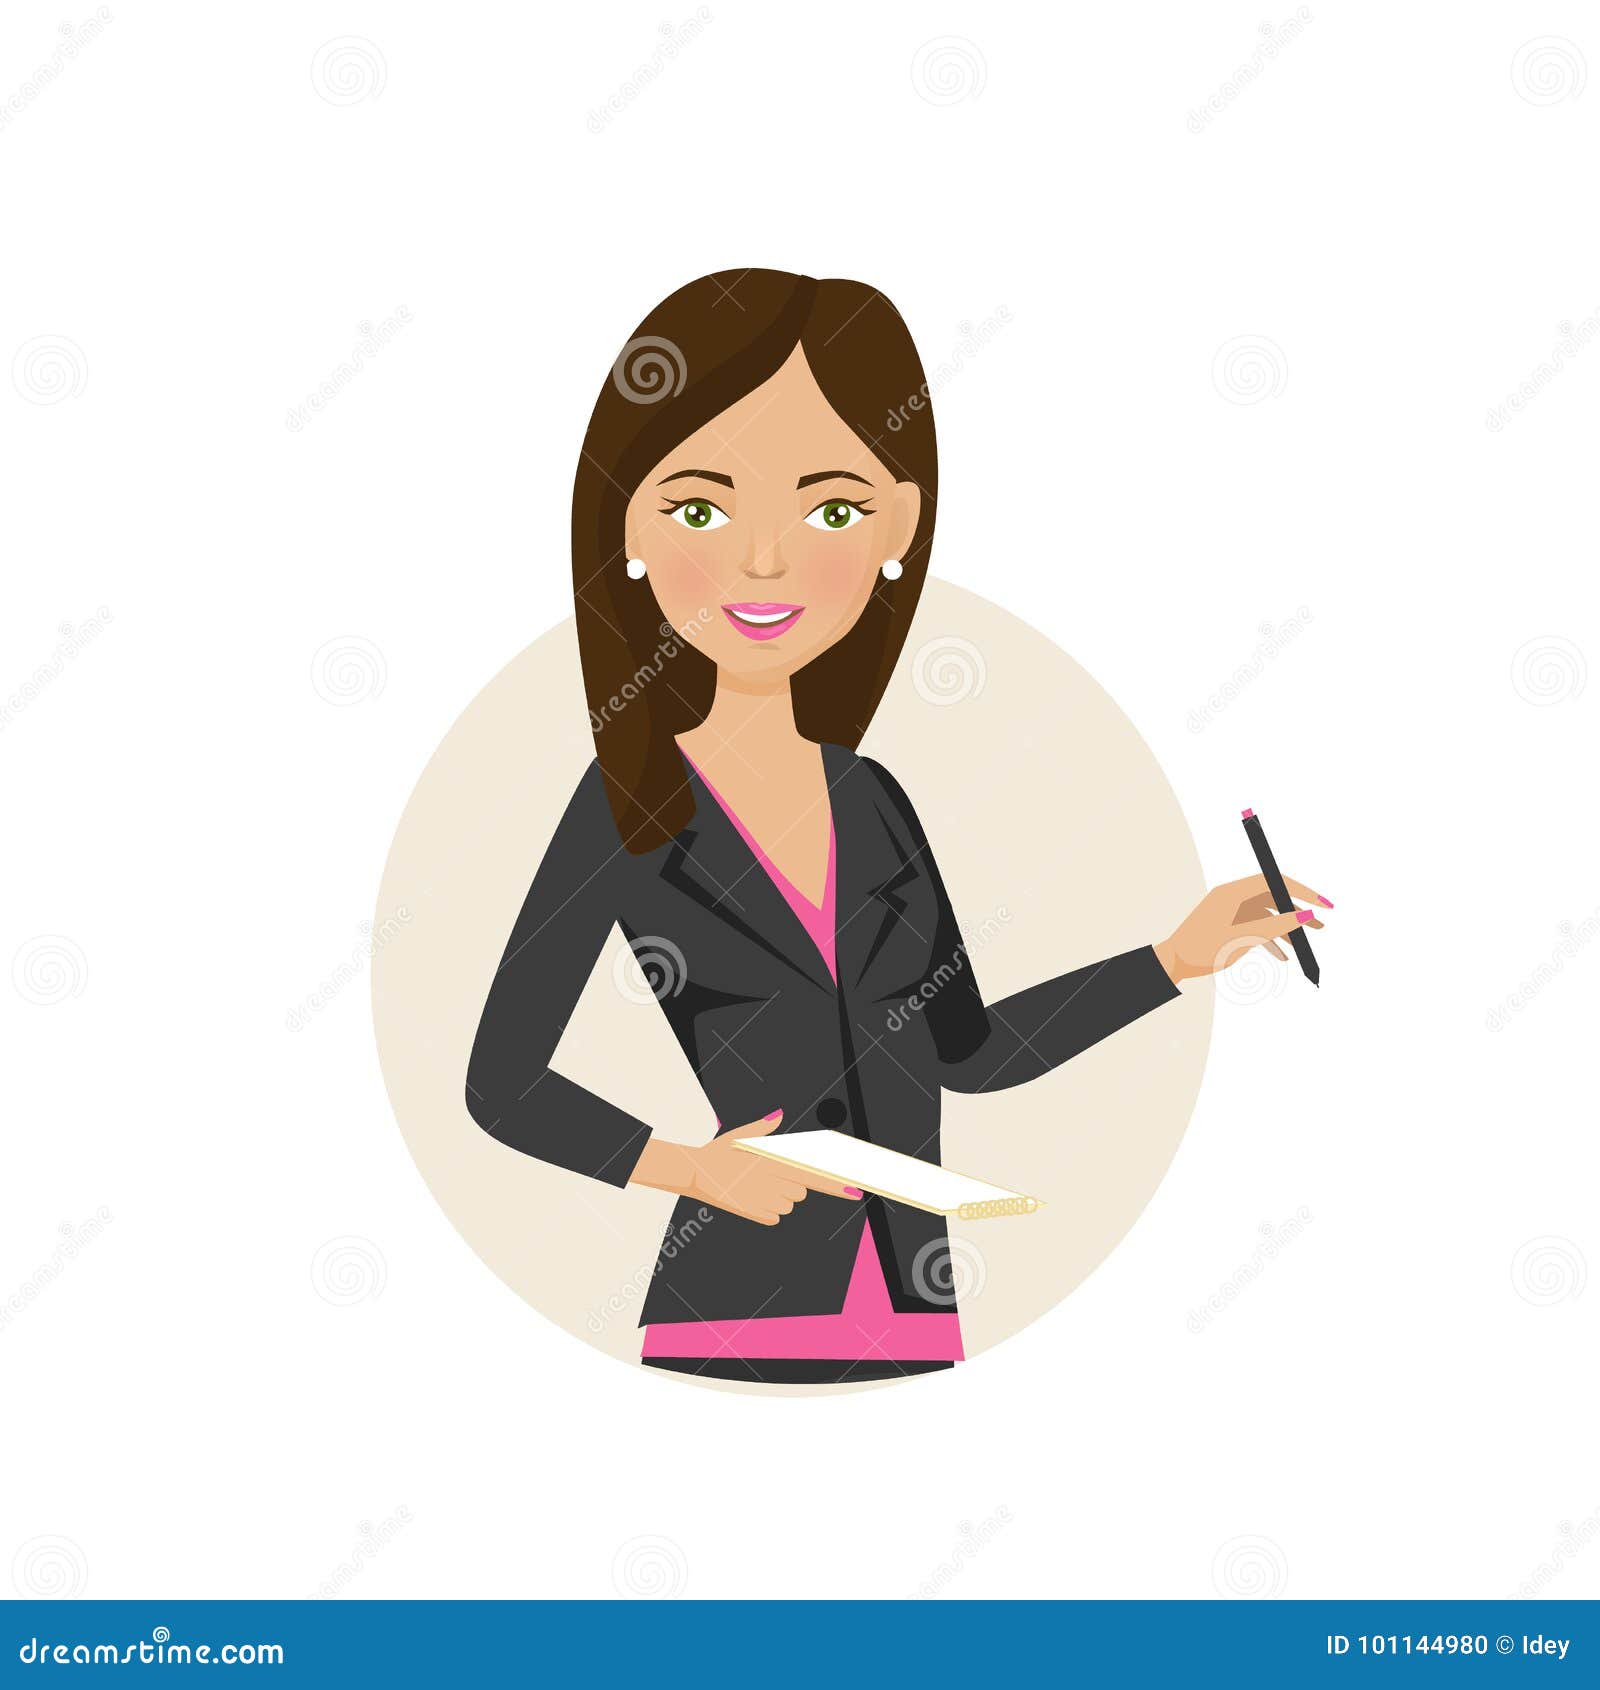 female office worker cartoon